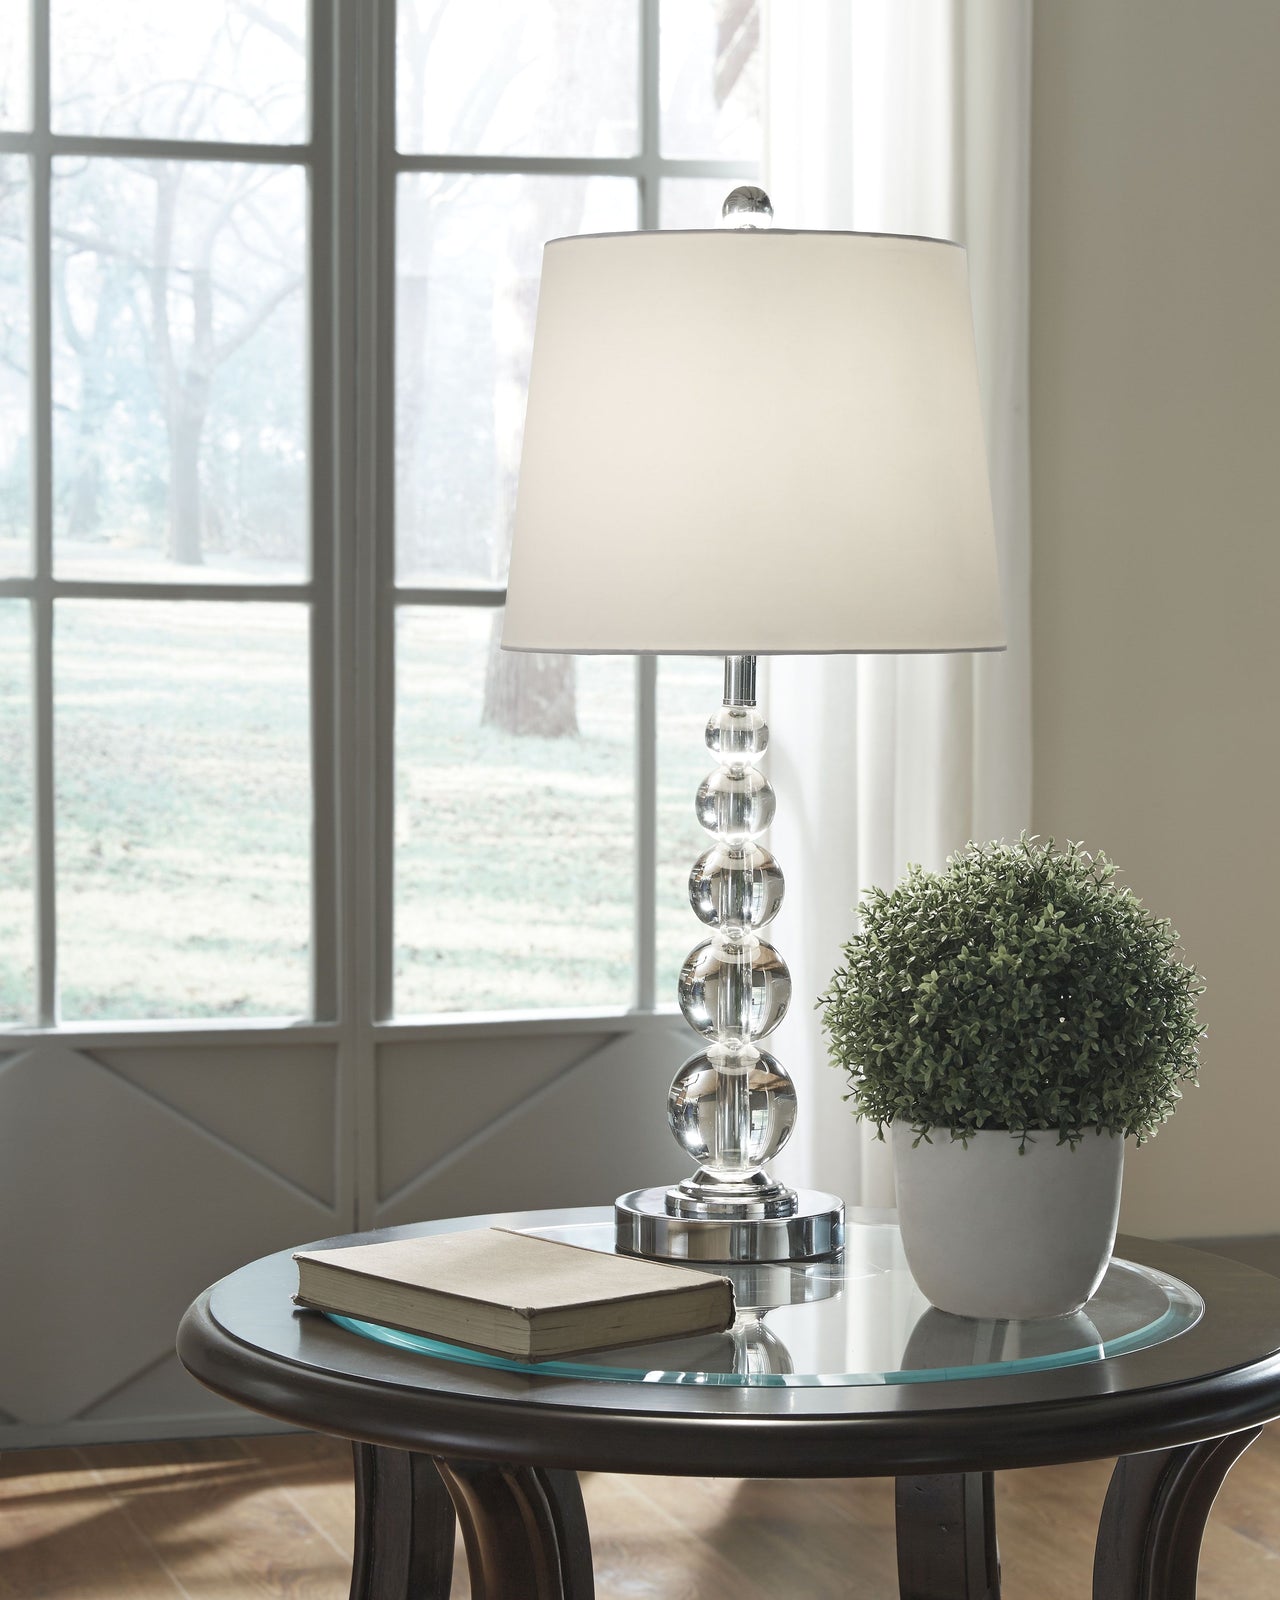 Joaquin - Crystal Table Lamp - Tony's Home Furnishings